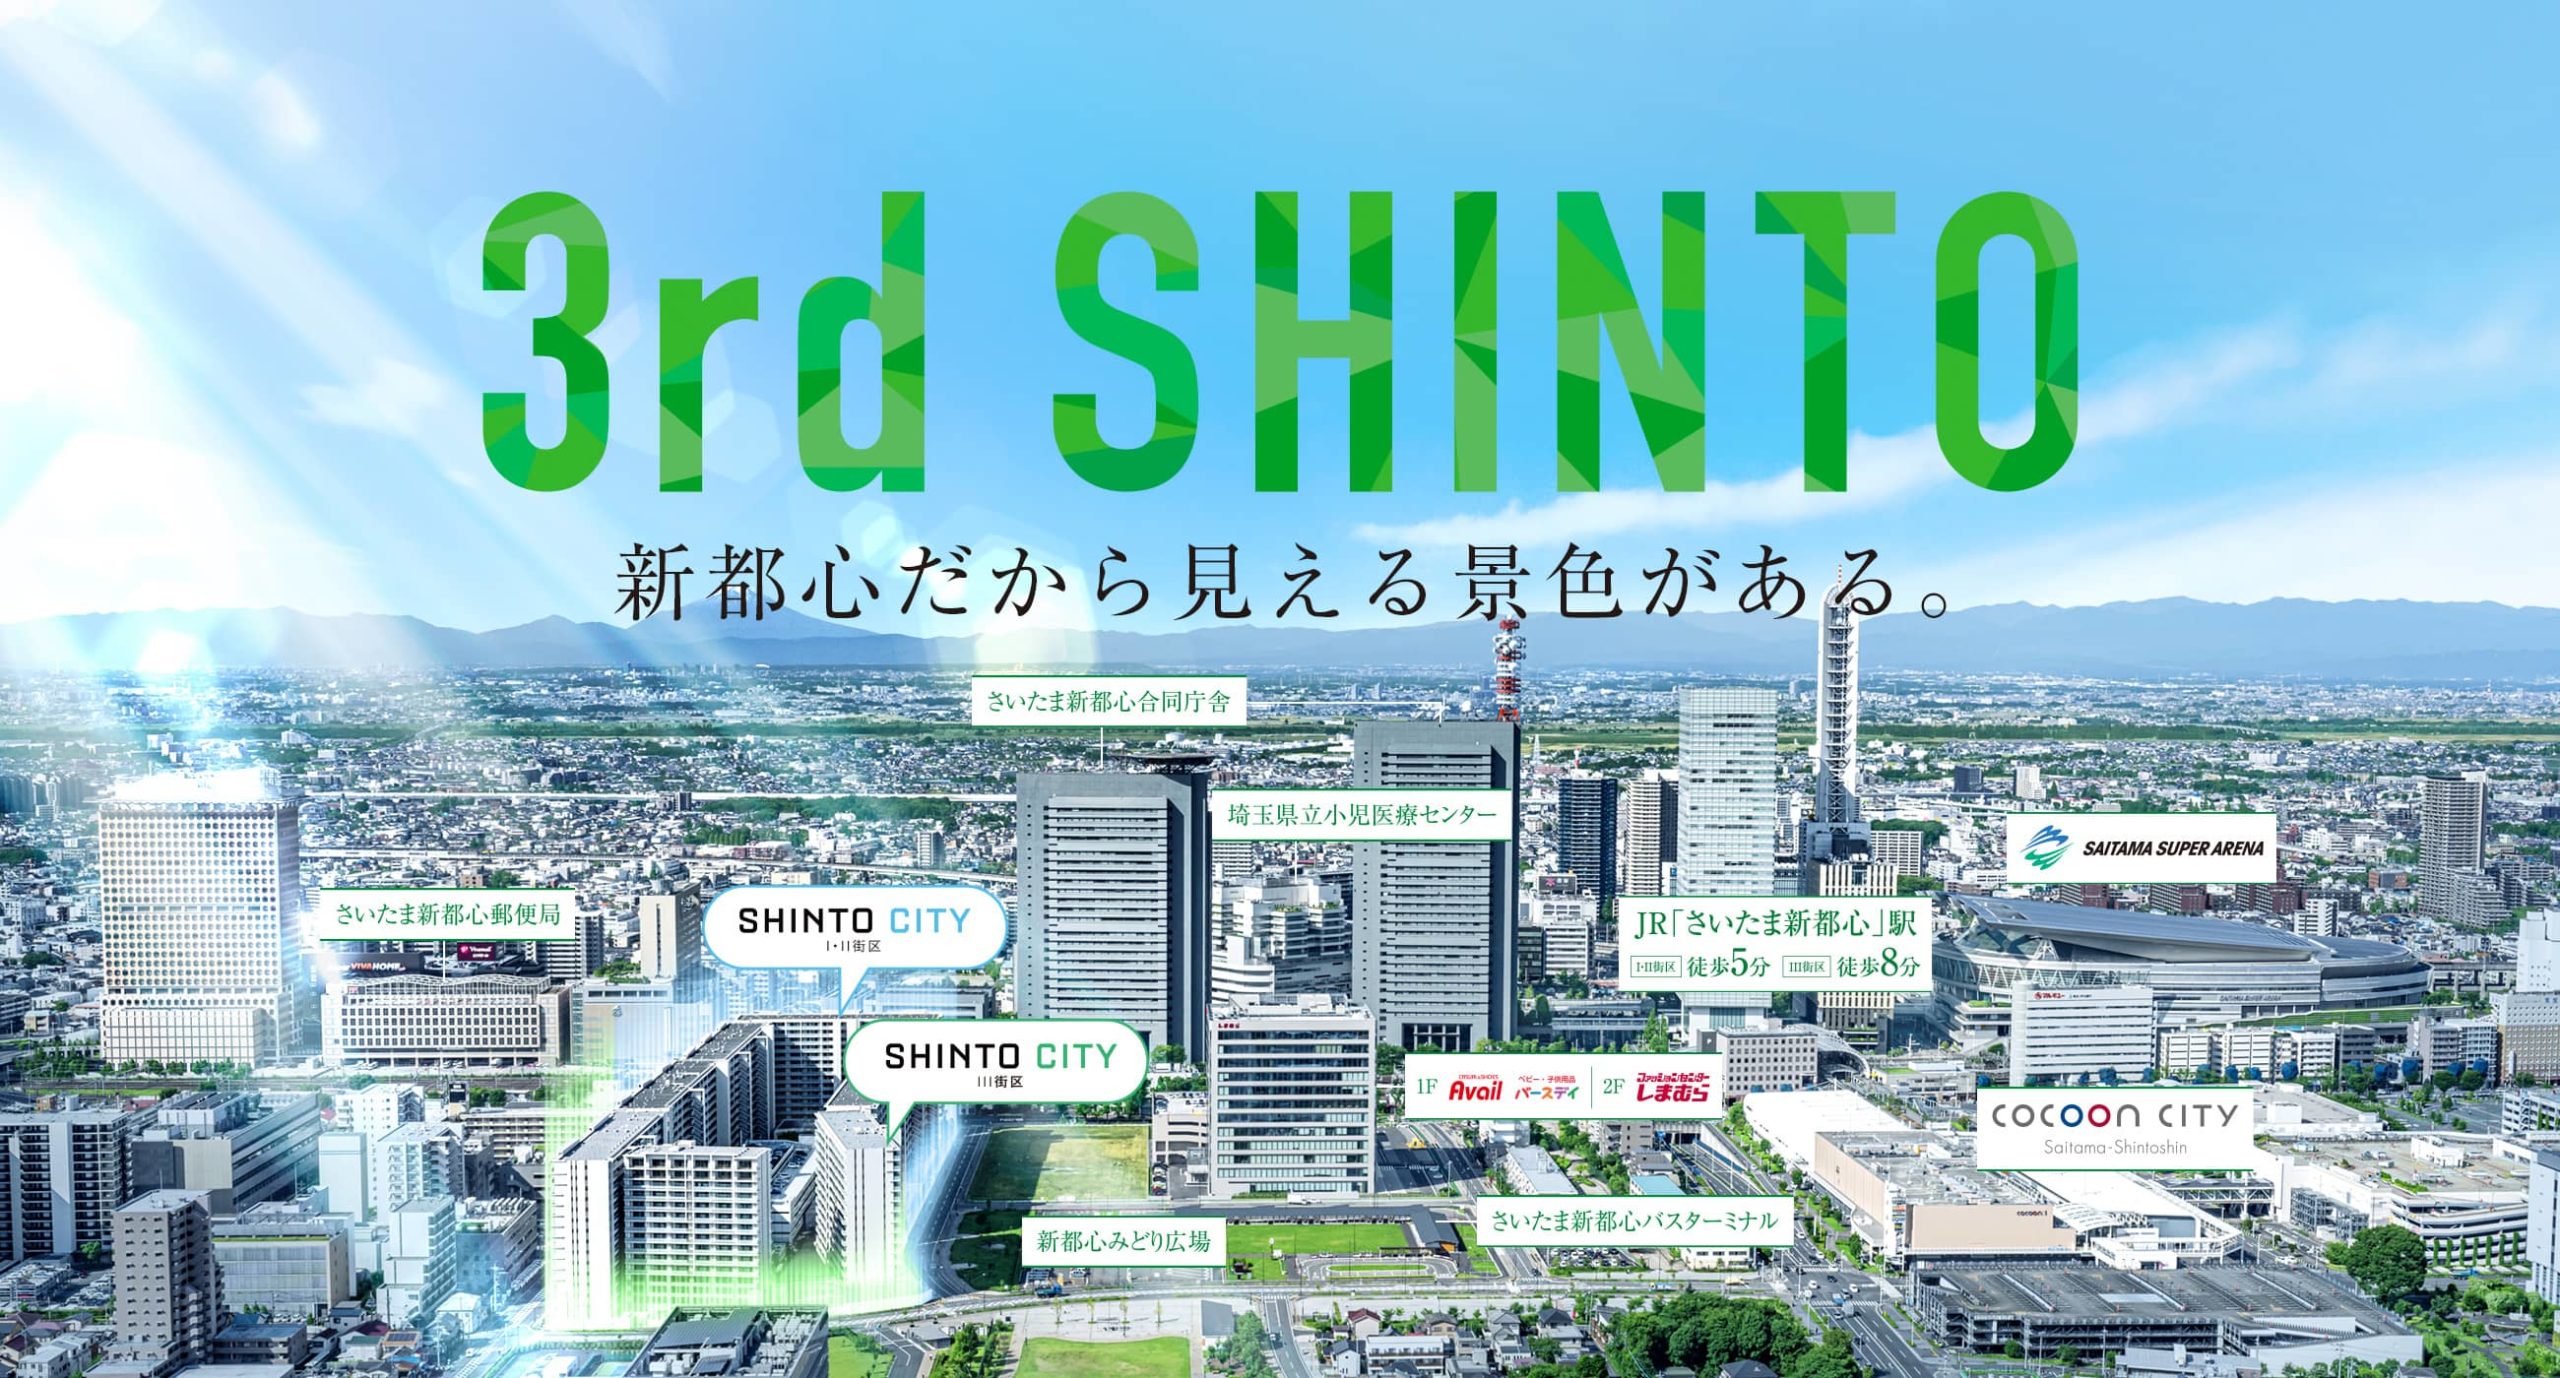 SHINTO CITY